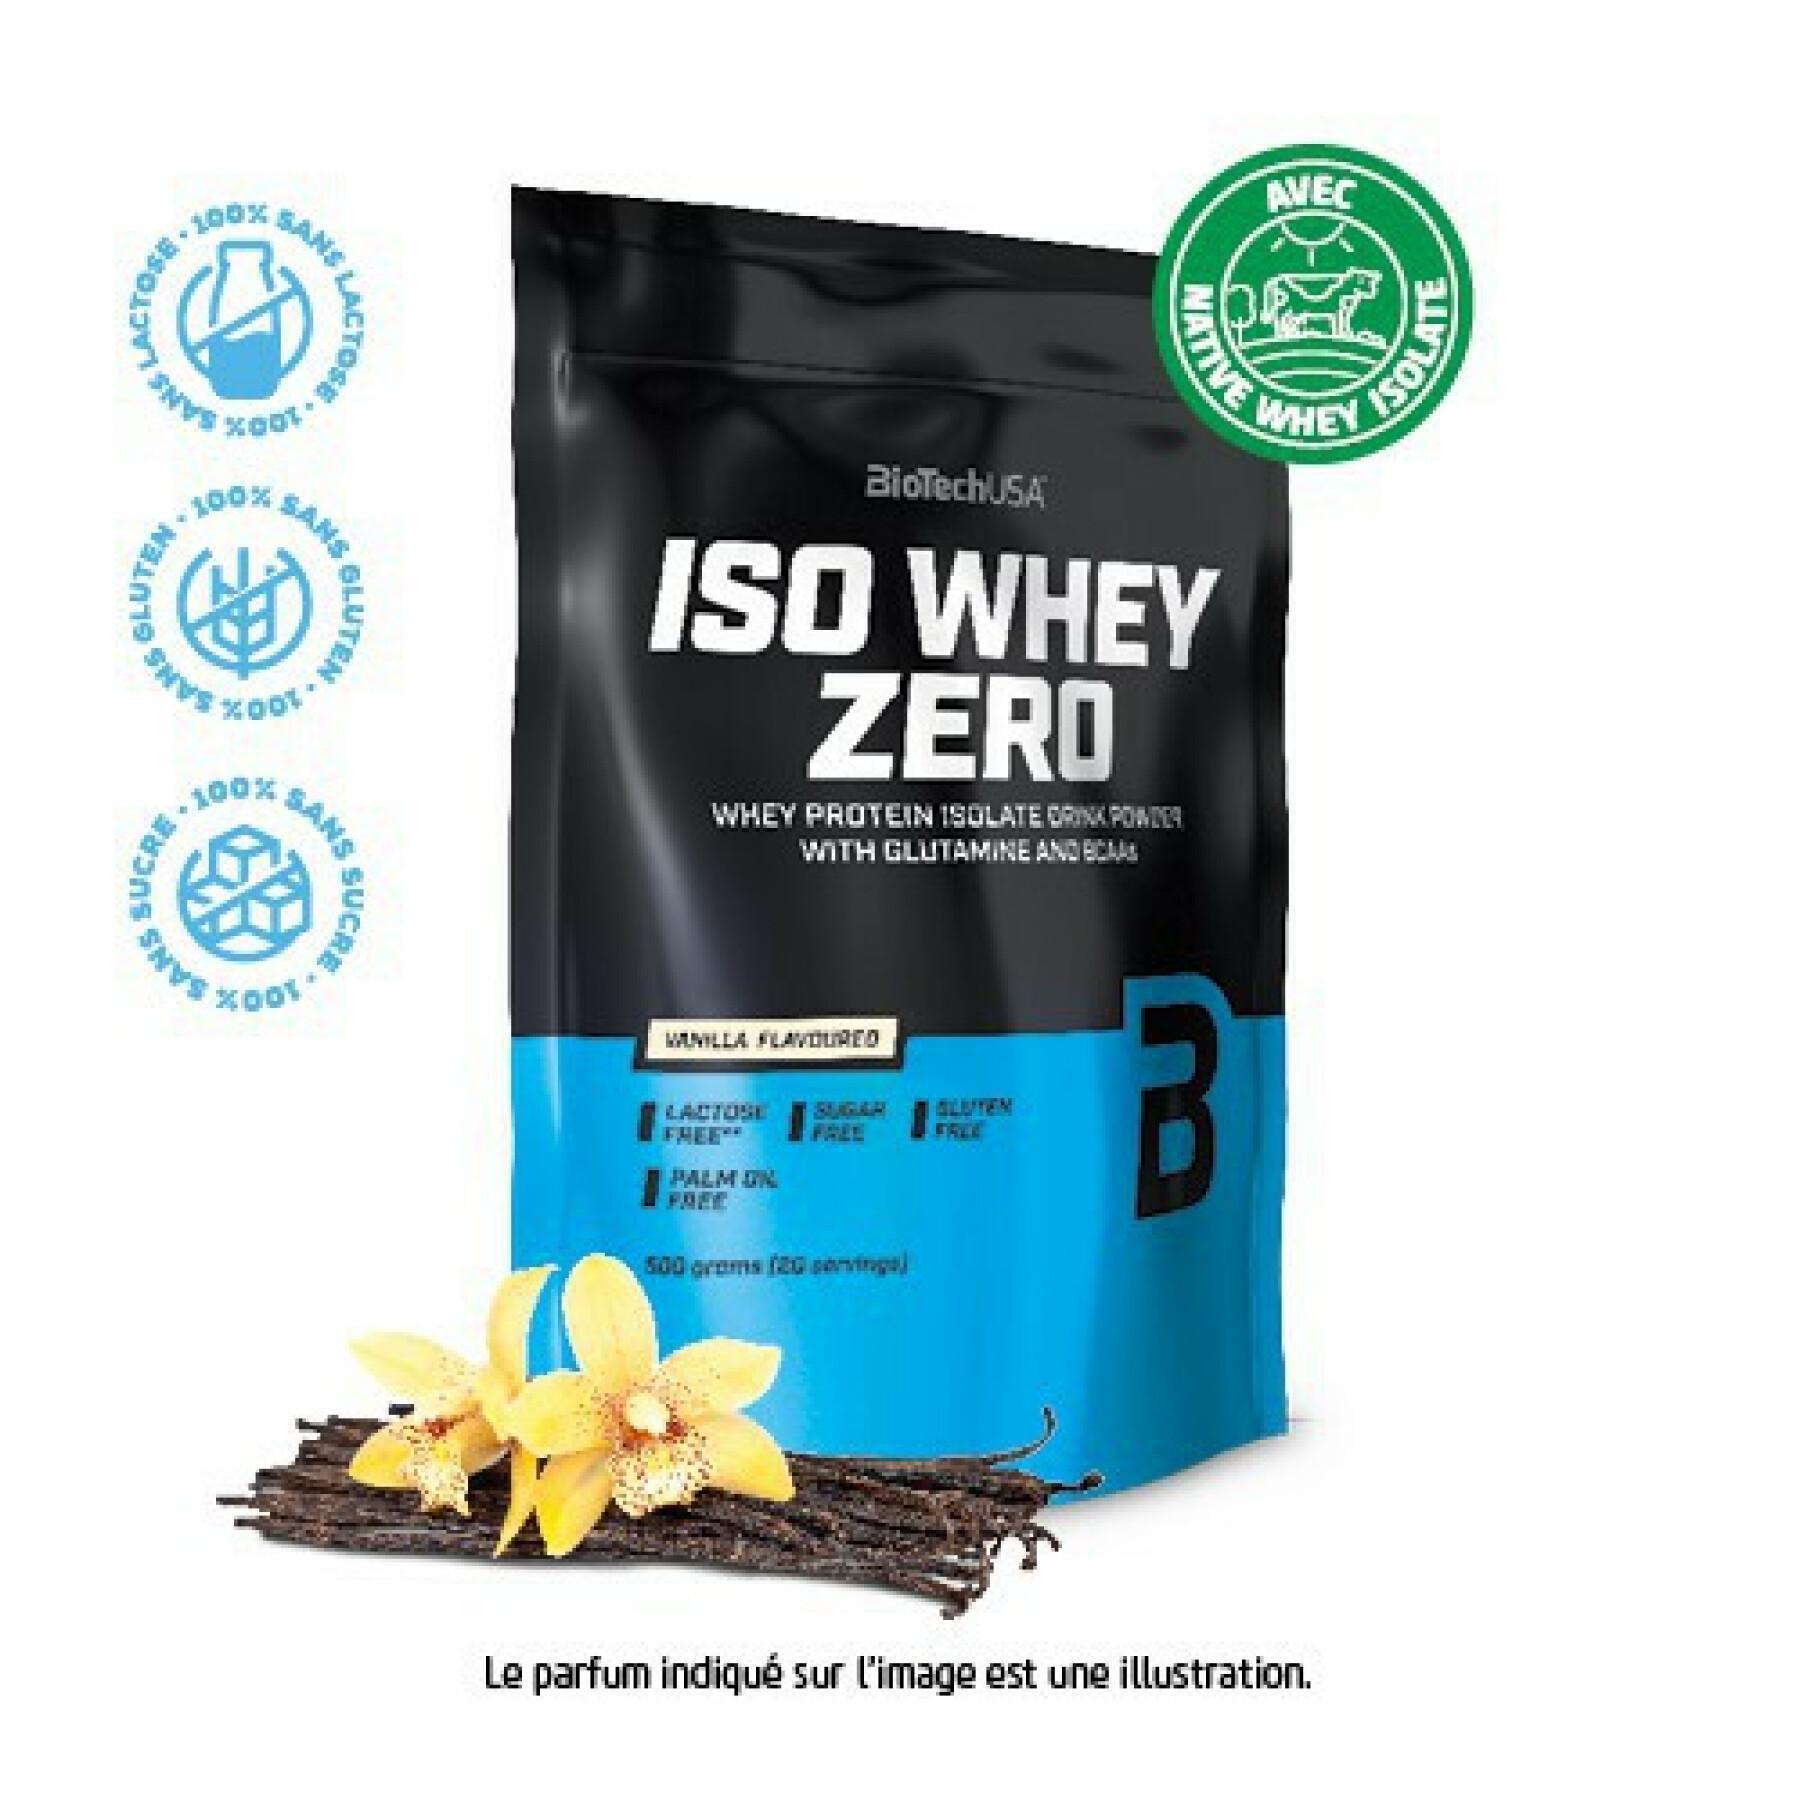 Pacote de 10 sacos de proteína Biotech USA iso whey zero lactose free - Vanille - 500g